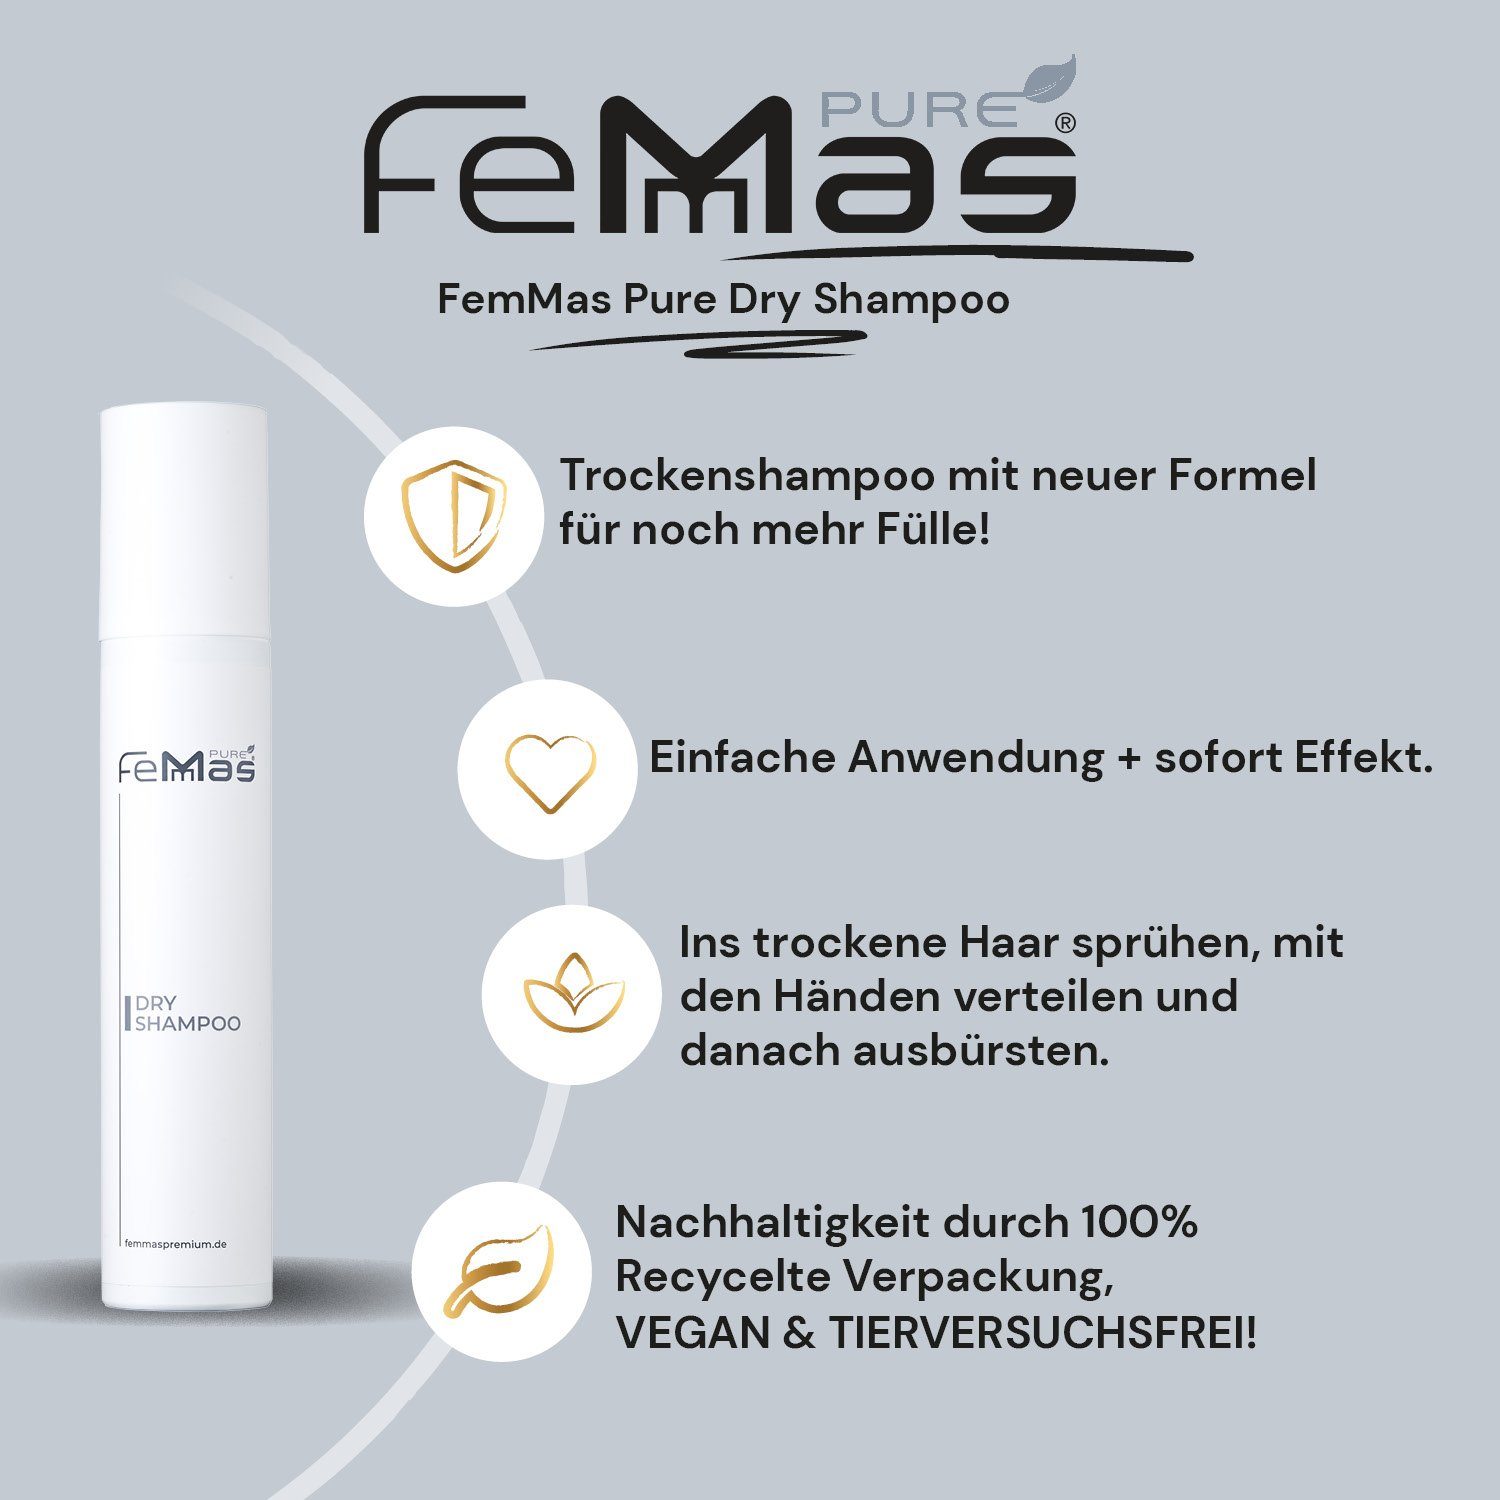 200ml Femmas Shampoo Dry Pure Trockenshampoo Premium Femmas